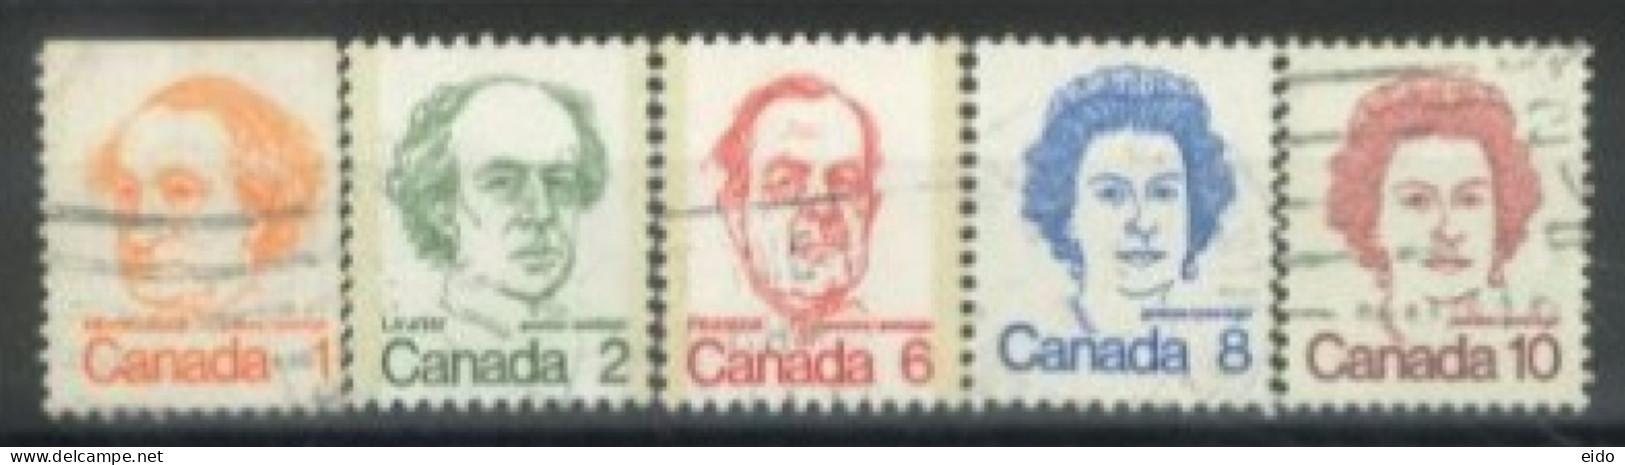 CANADA - 1972, CELEBRITIES STAMPS SET OF 5, USED. - Gebruikt